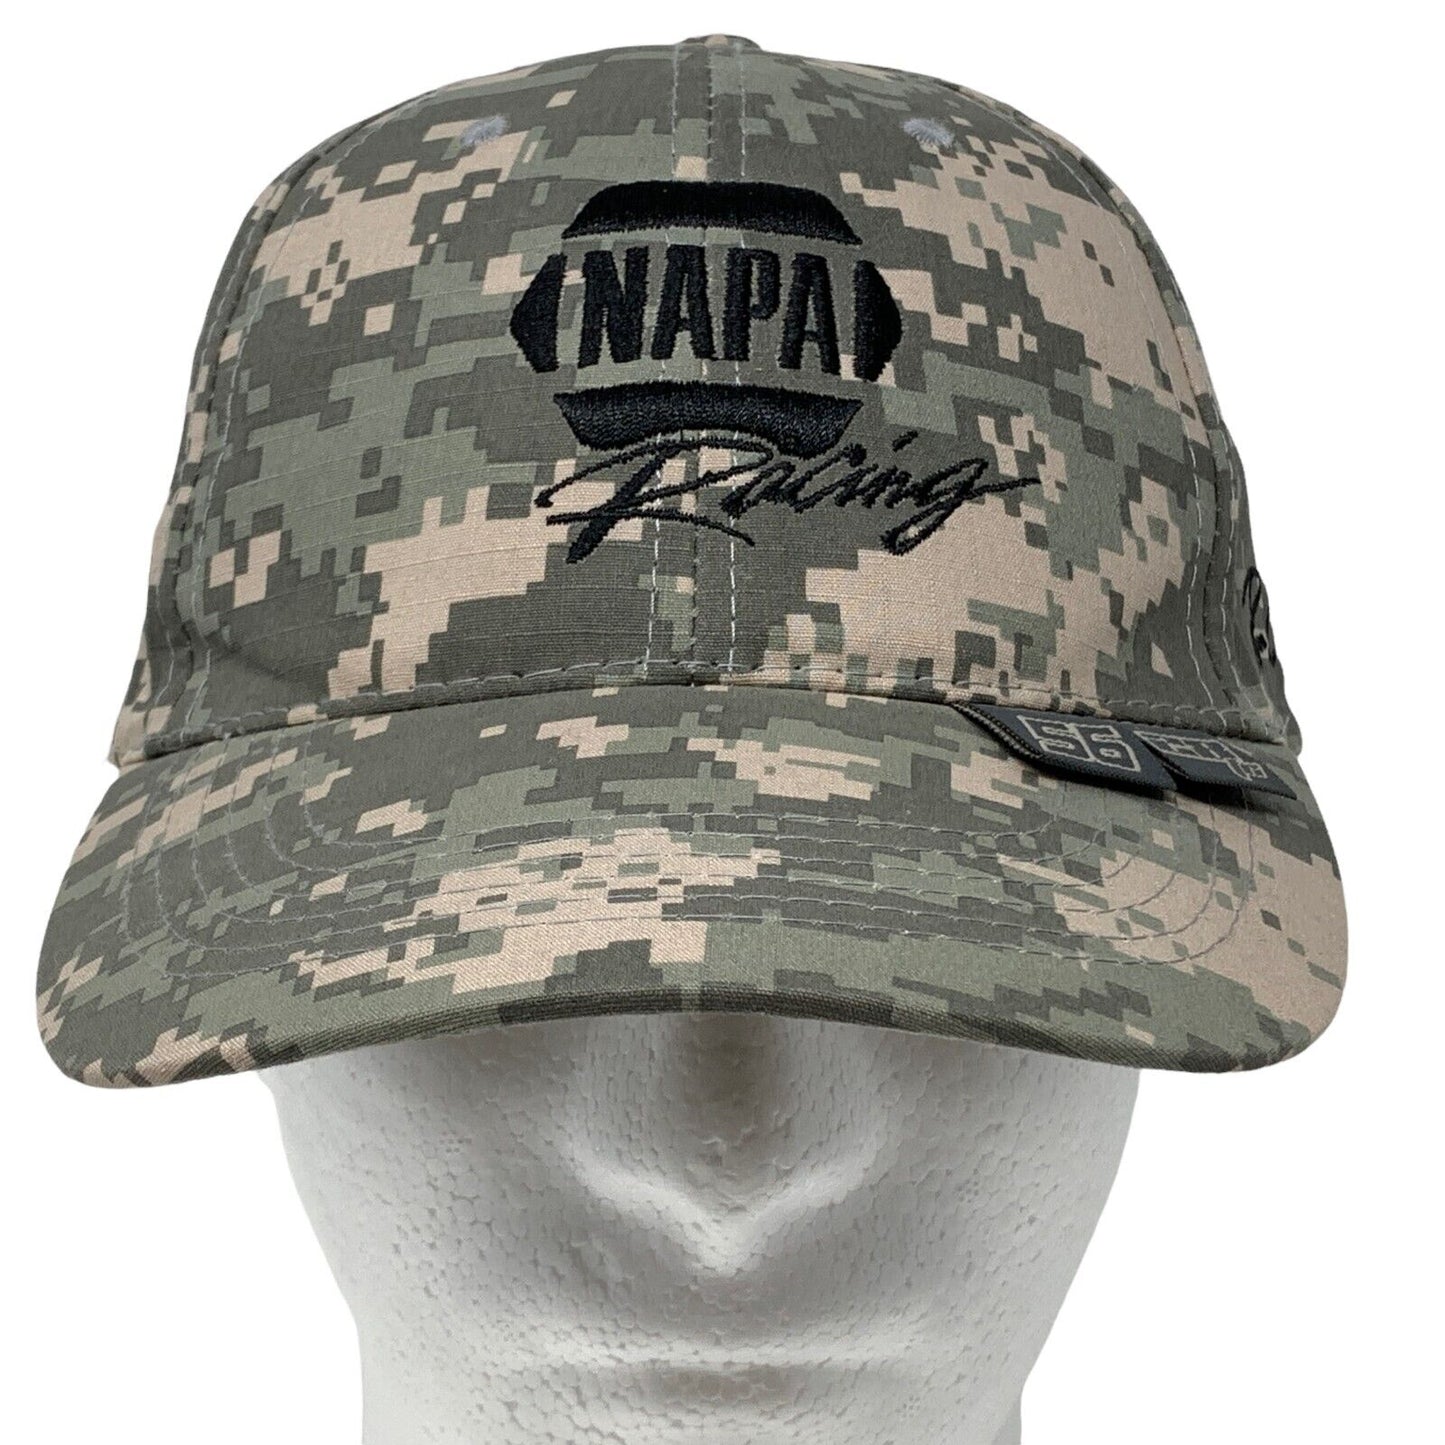 NAPA Racing Camouflage Strapback Hat NASCAR NHRA Motorsports Racing Baseball Cap